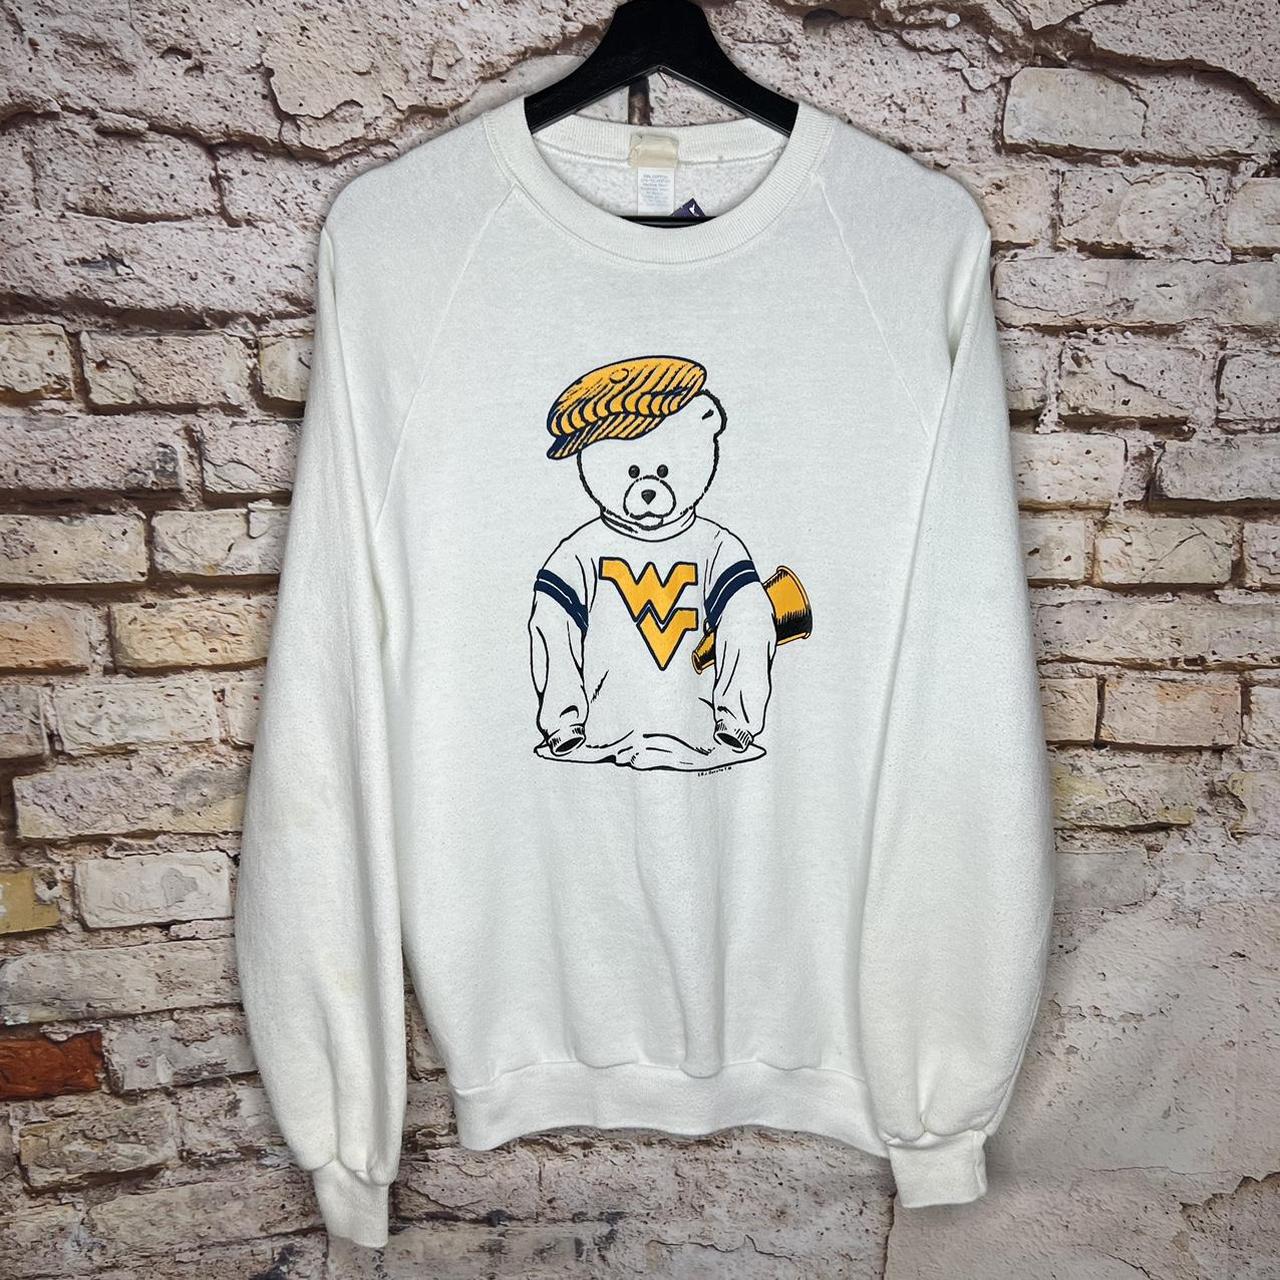 Vintage Men's Sweatshirt - White - XXL